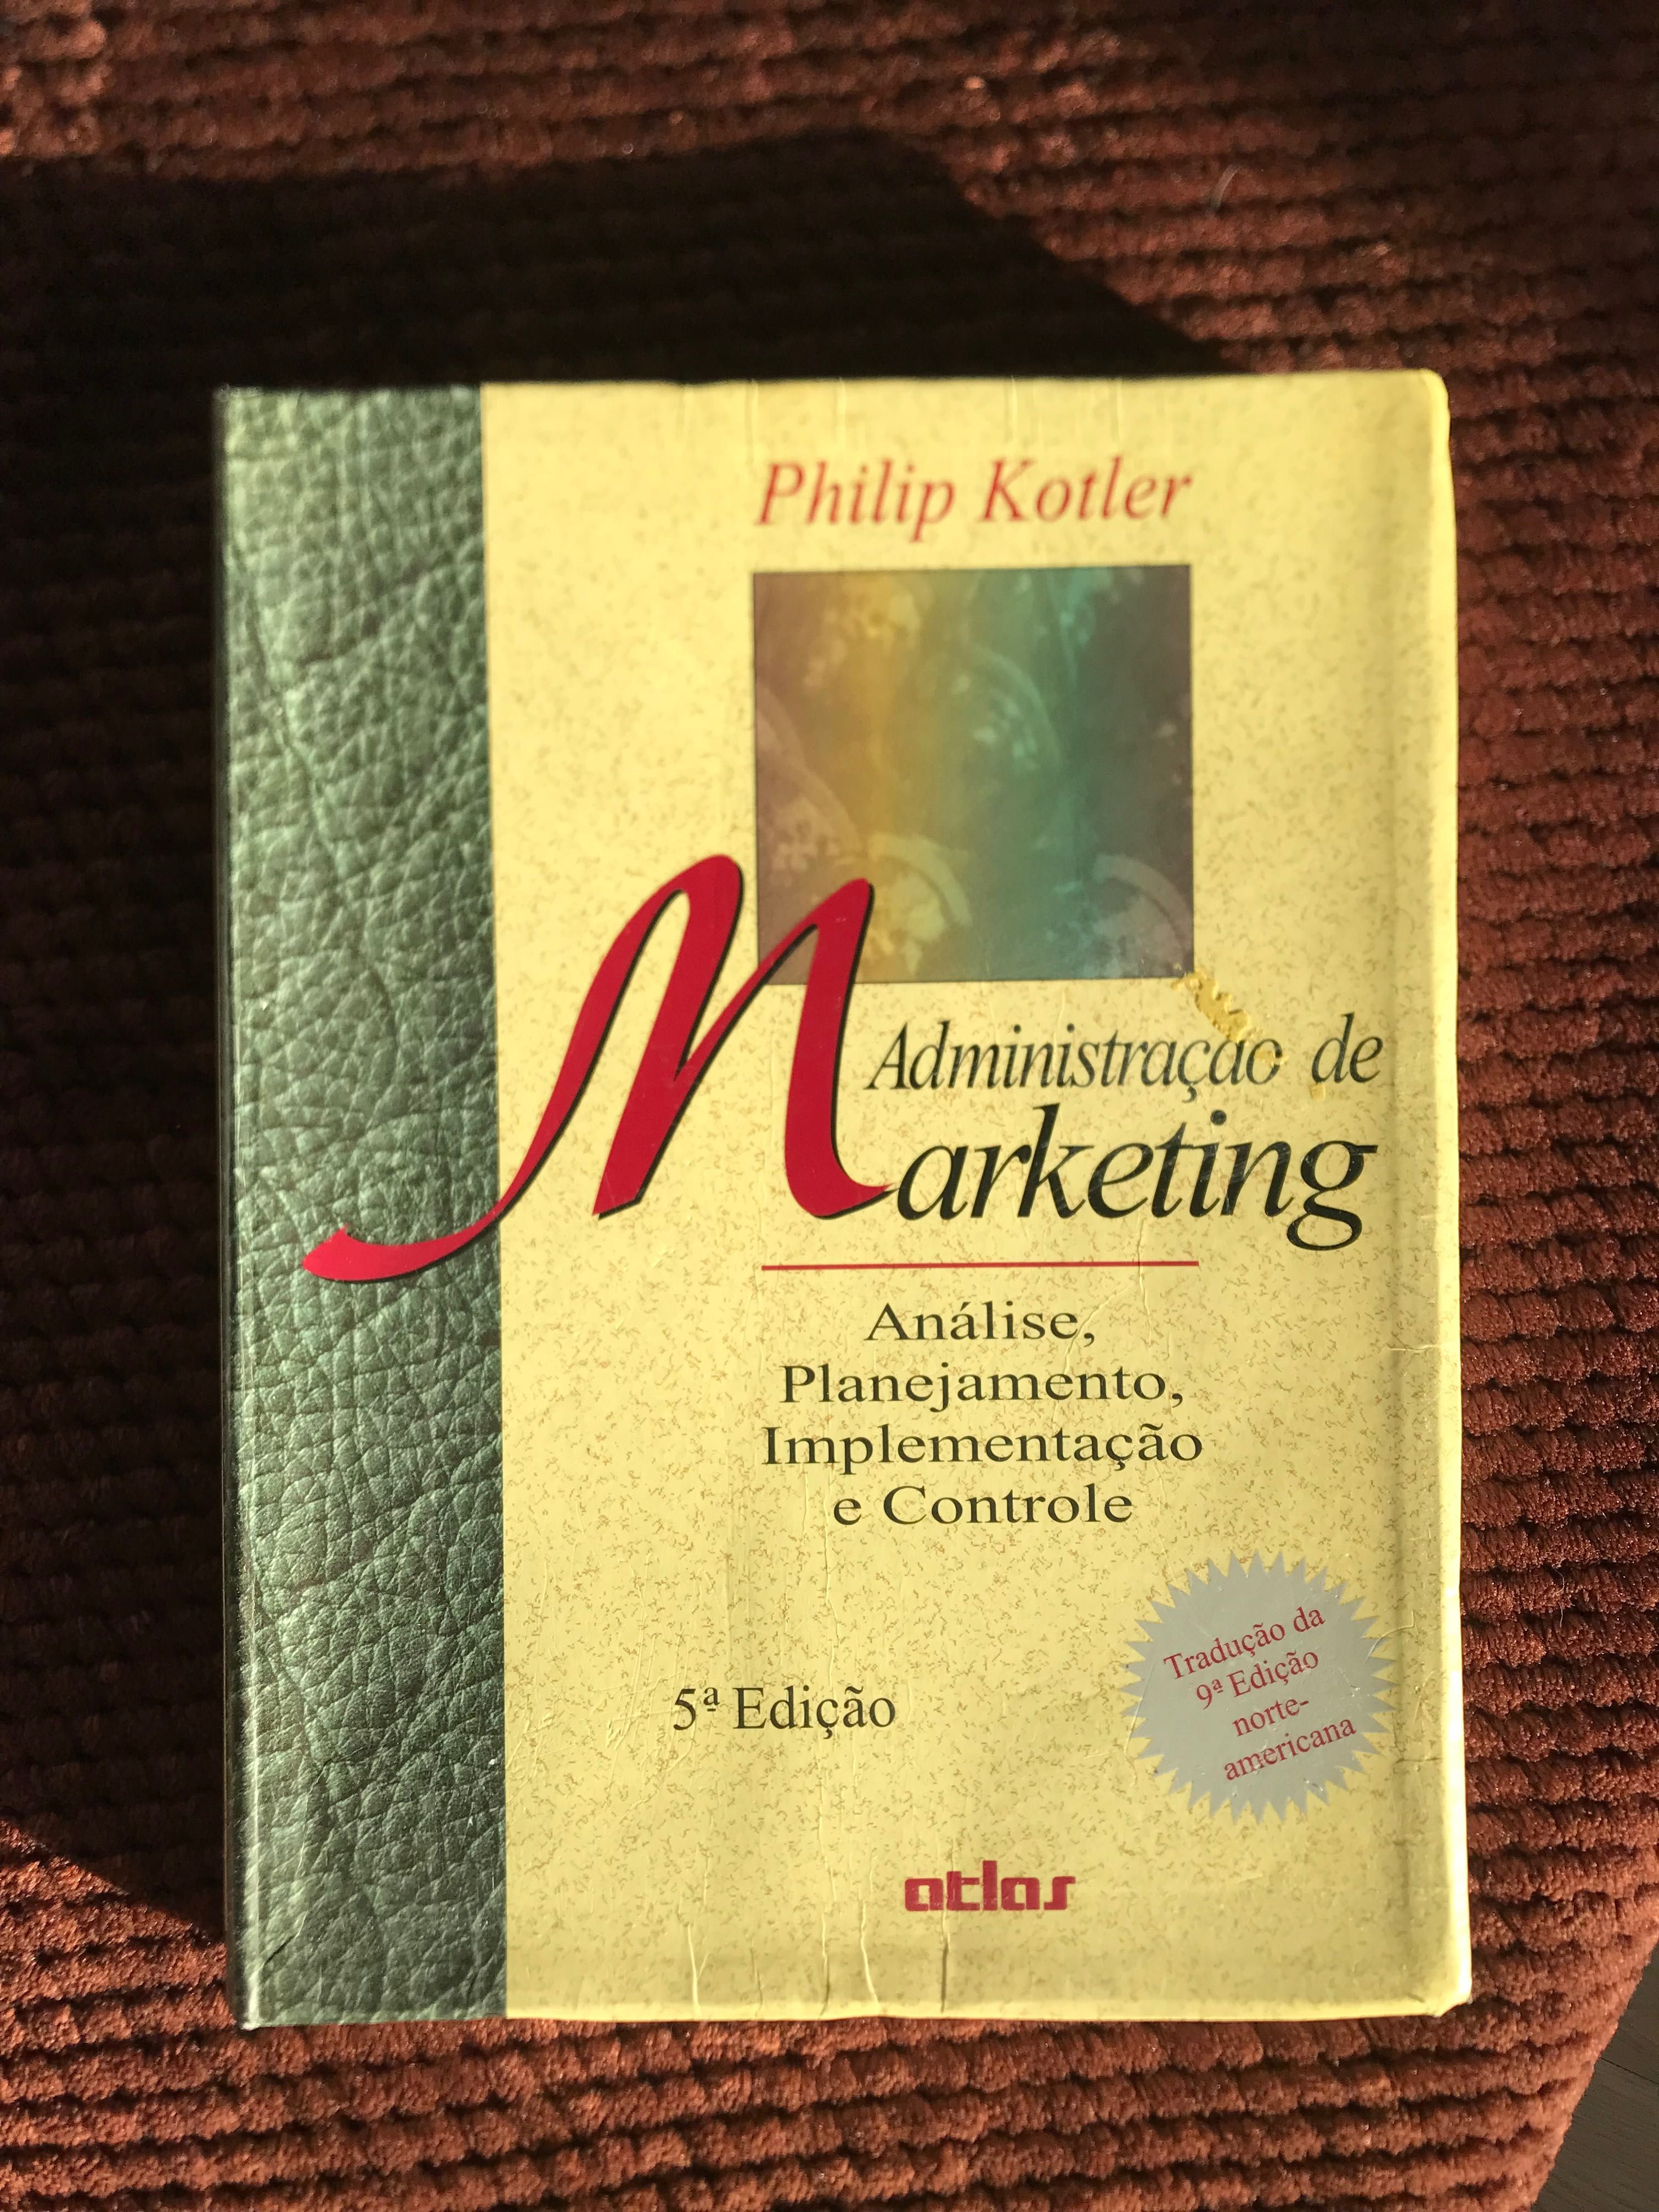 Livro - Administração de Marketing de Philip Kotler